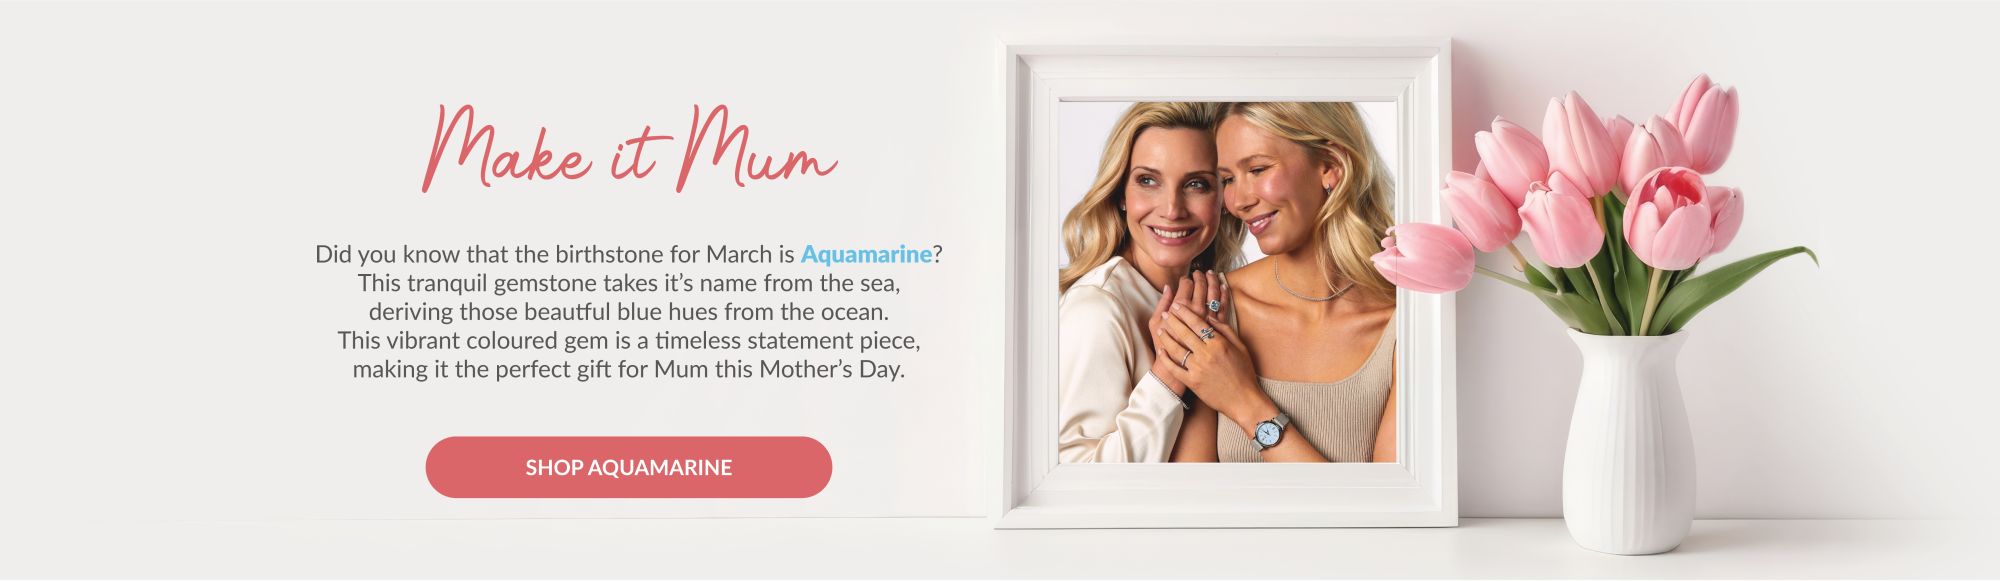 Explore Aquamarine this Mother's Day